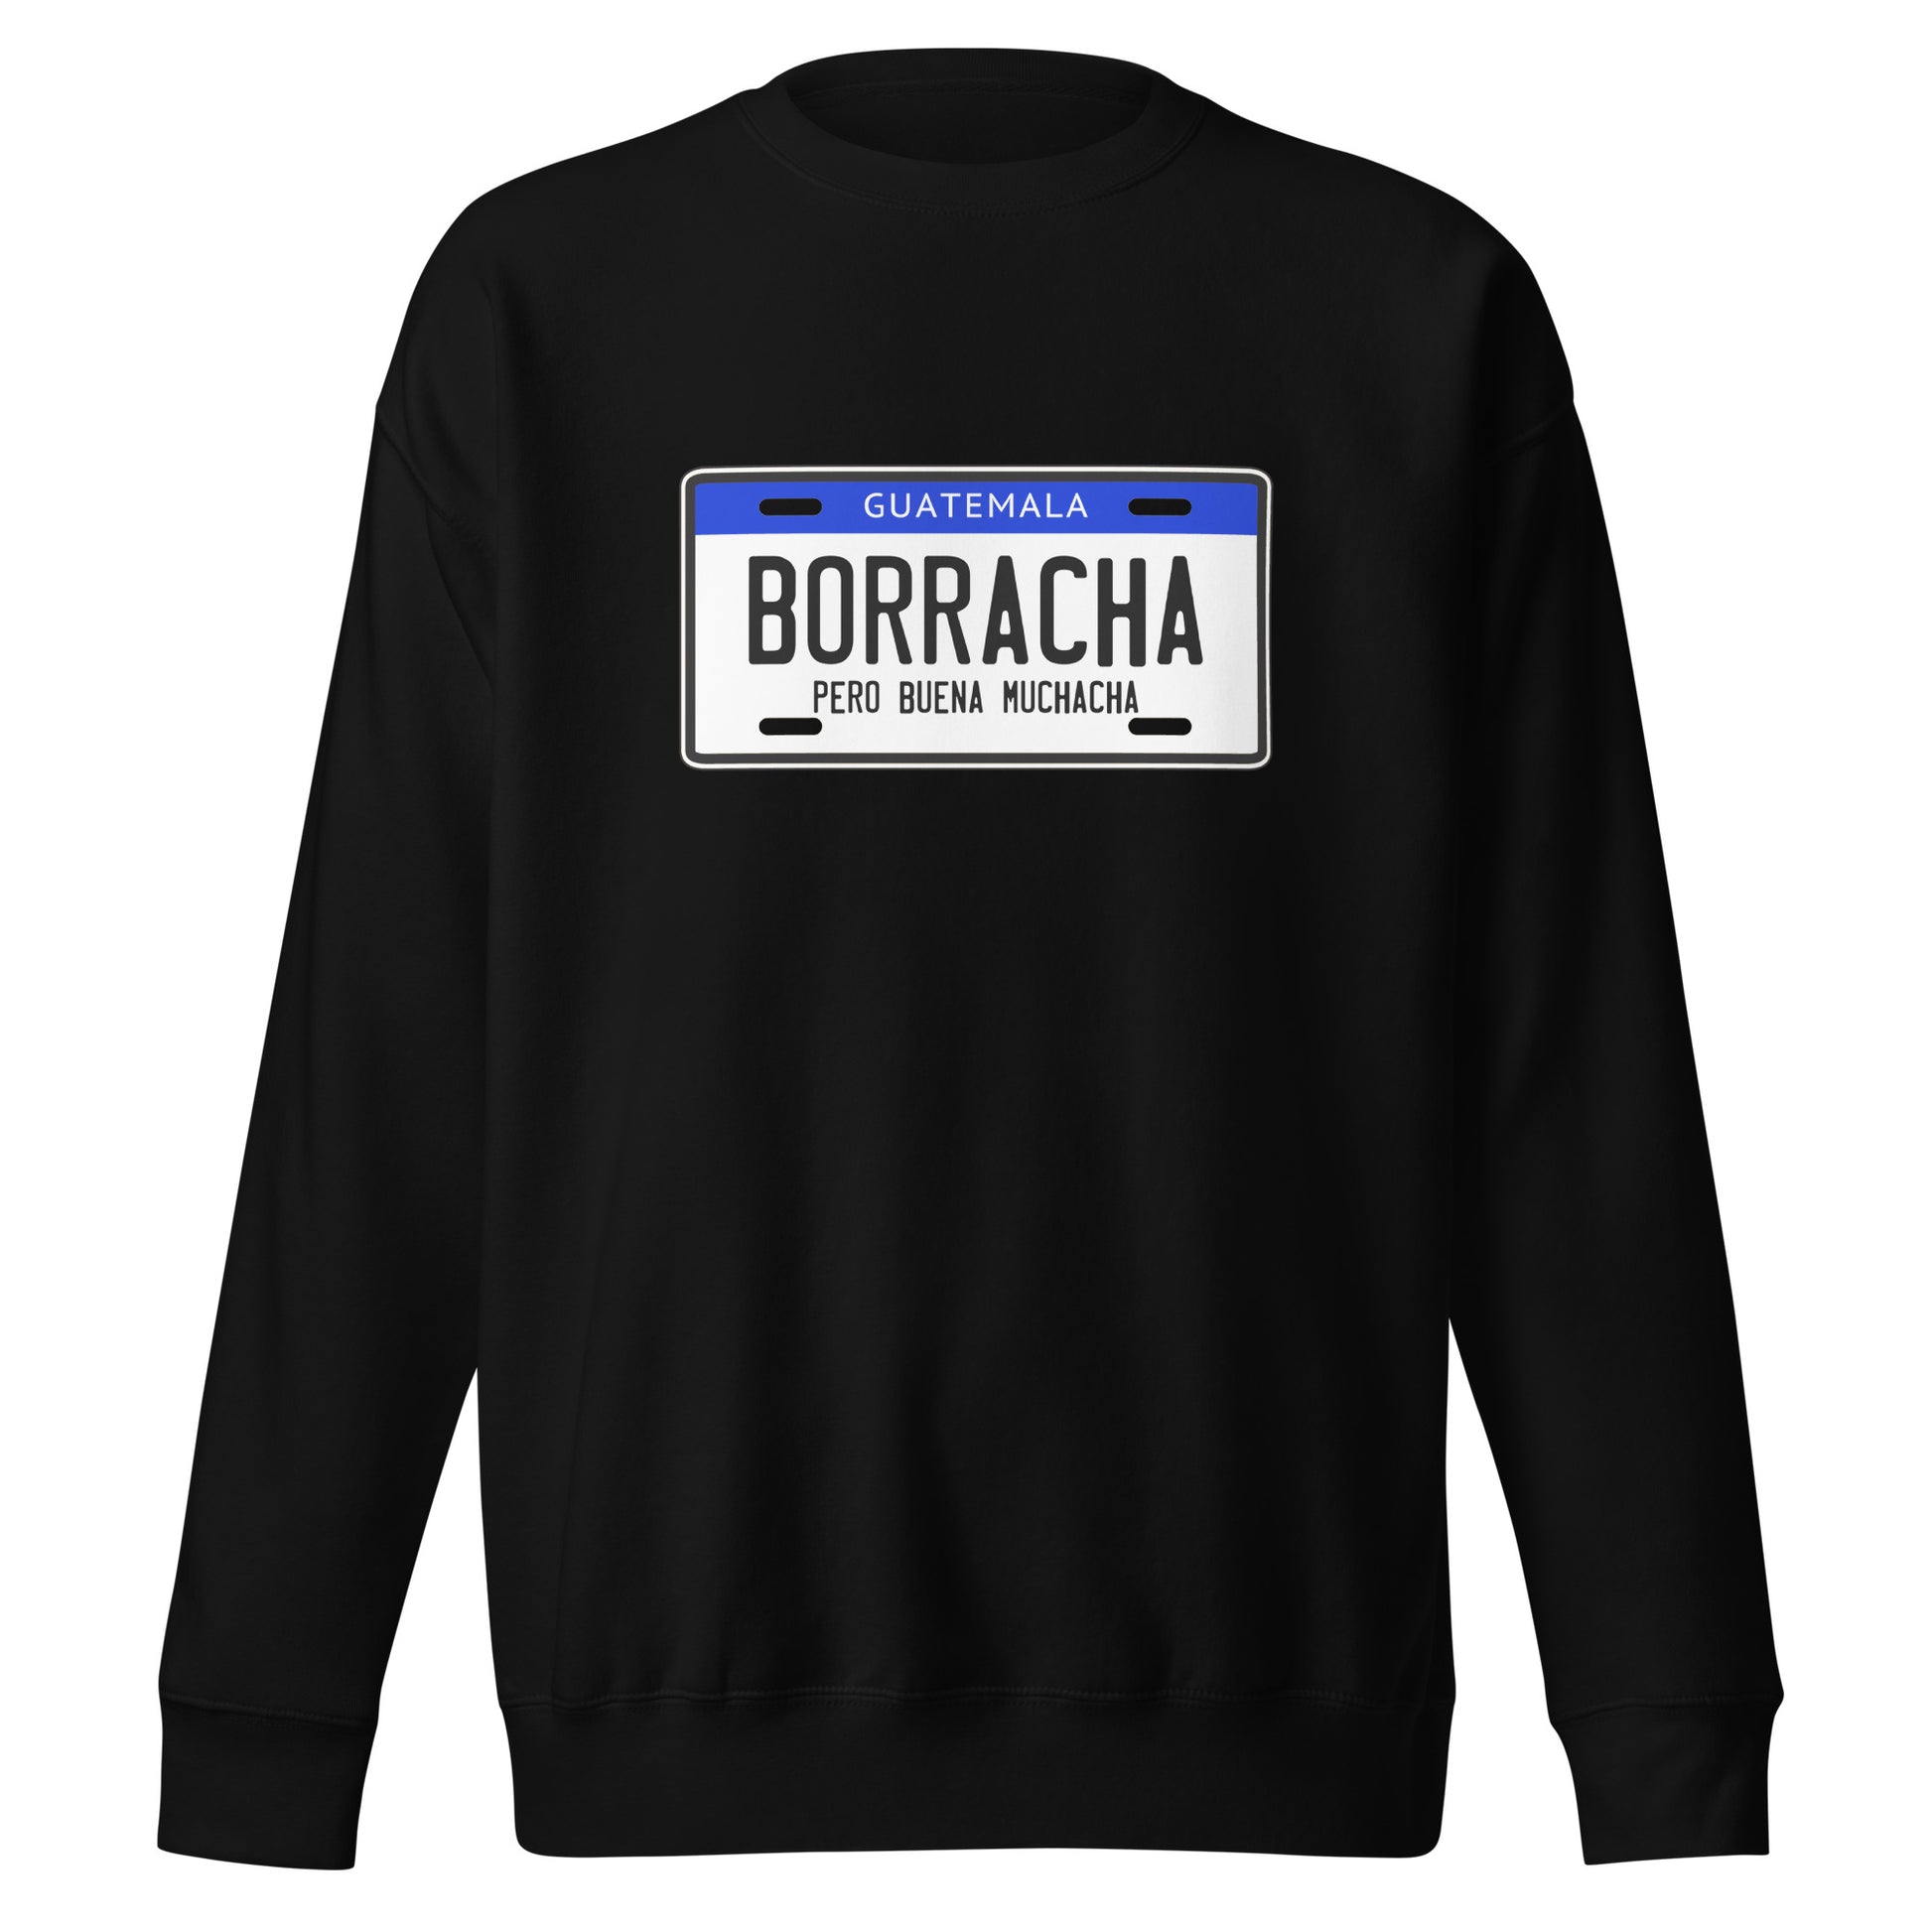 Suéter de Borracha Guate ,Descubre calidad excepcional y estampados duraderos. Encuentra estilo y orgullo en cada prenda. Compra ahora!